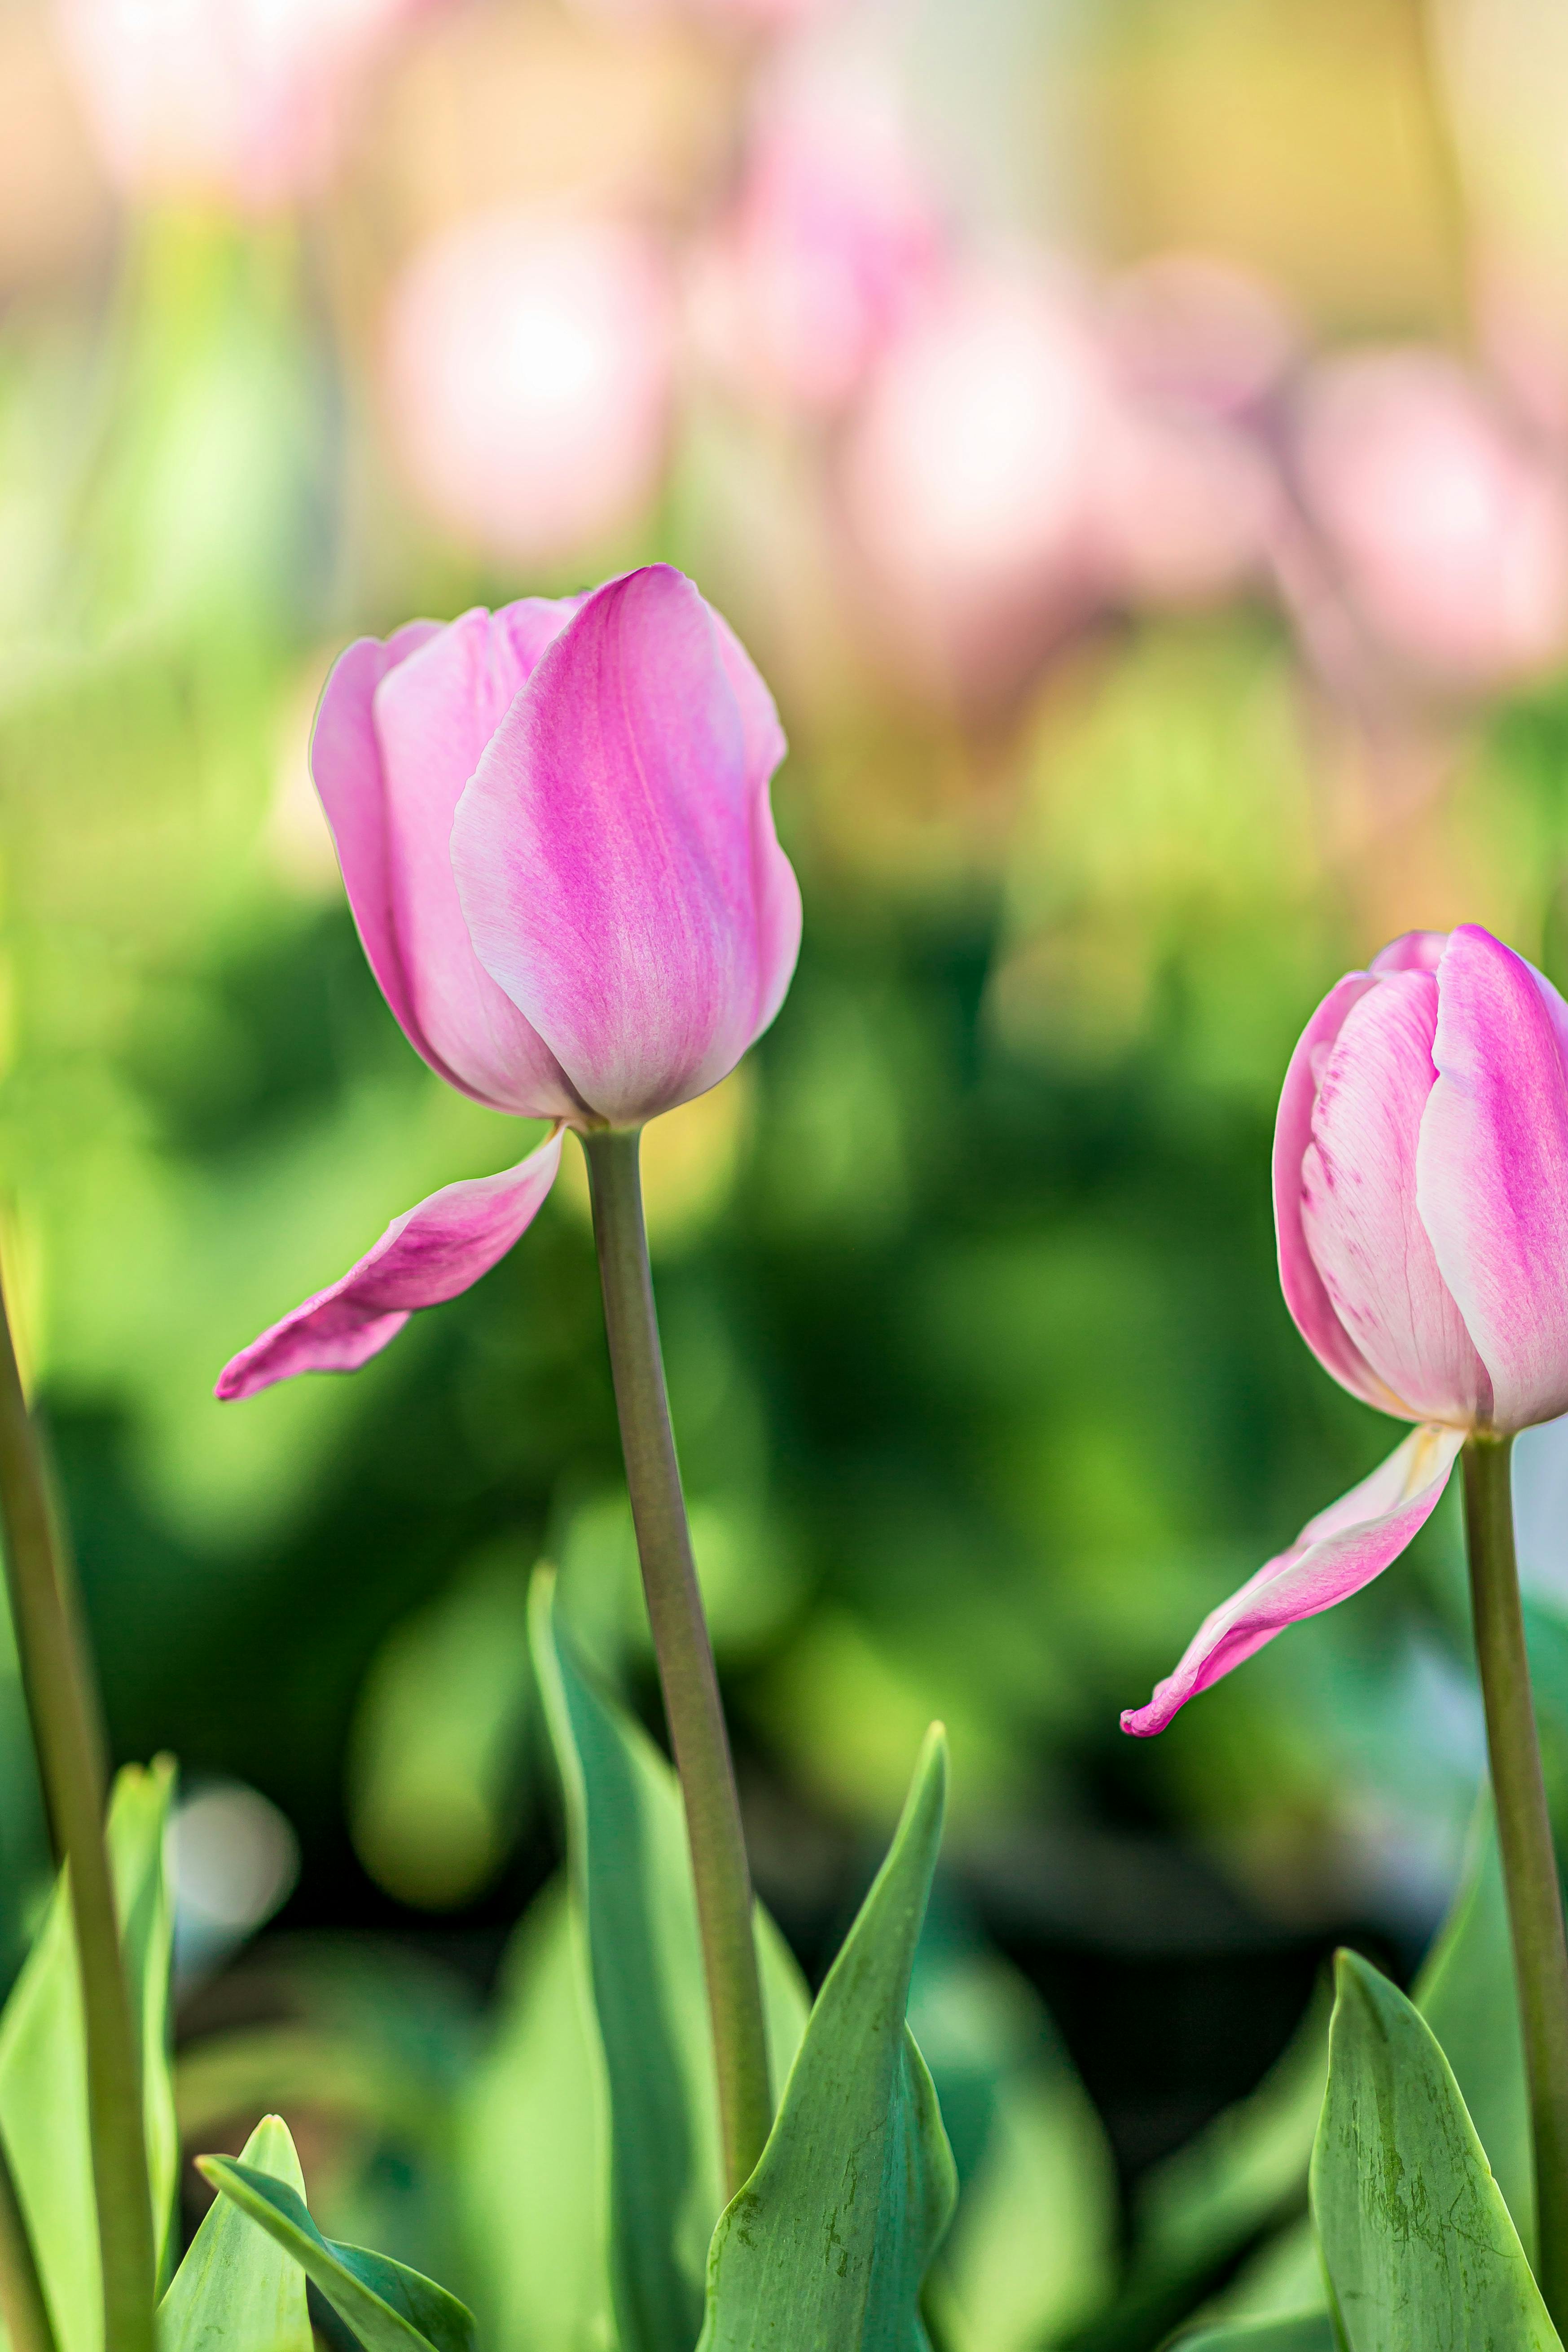 Khám phá vẻ đẹp tuyệt vời của hoa tulip hồng gần cận với bức ảnh stock miễn phí này. Với độ sắc nét cao, hình ảnh này sẽ giúp bạn tận hưởng tuyệt vời vẻ đẹp thanh thoát của hoa tulip hồng. Sử dụng như là hình nền hoặc chỉ đơn giản là thưởng thức, bức ảnh này sẽ giúp bạn điểm tô cho màn hình hiện thị của mình.